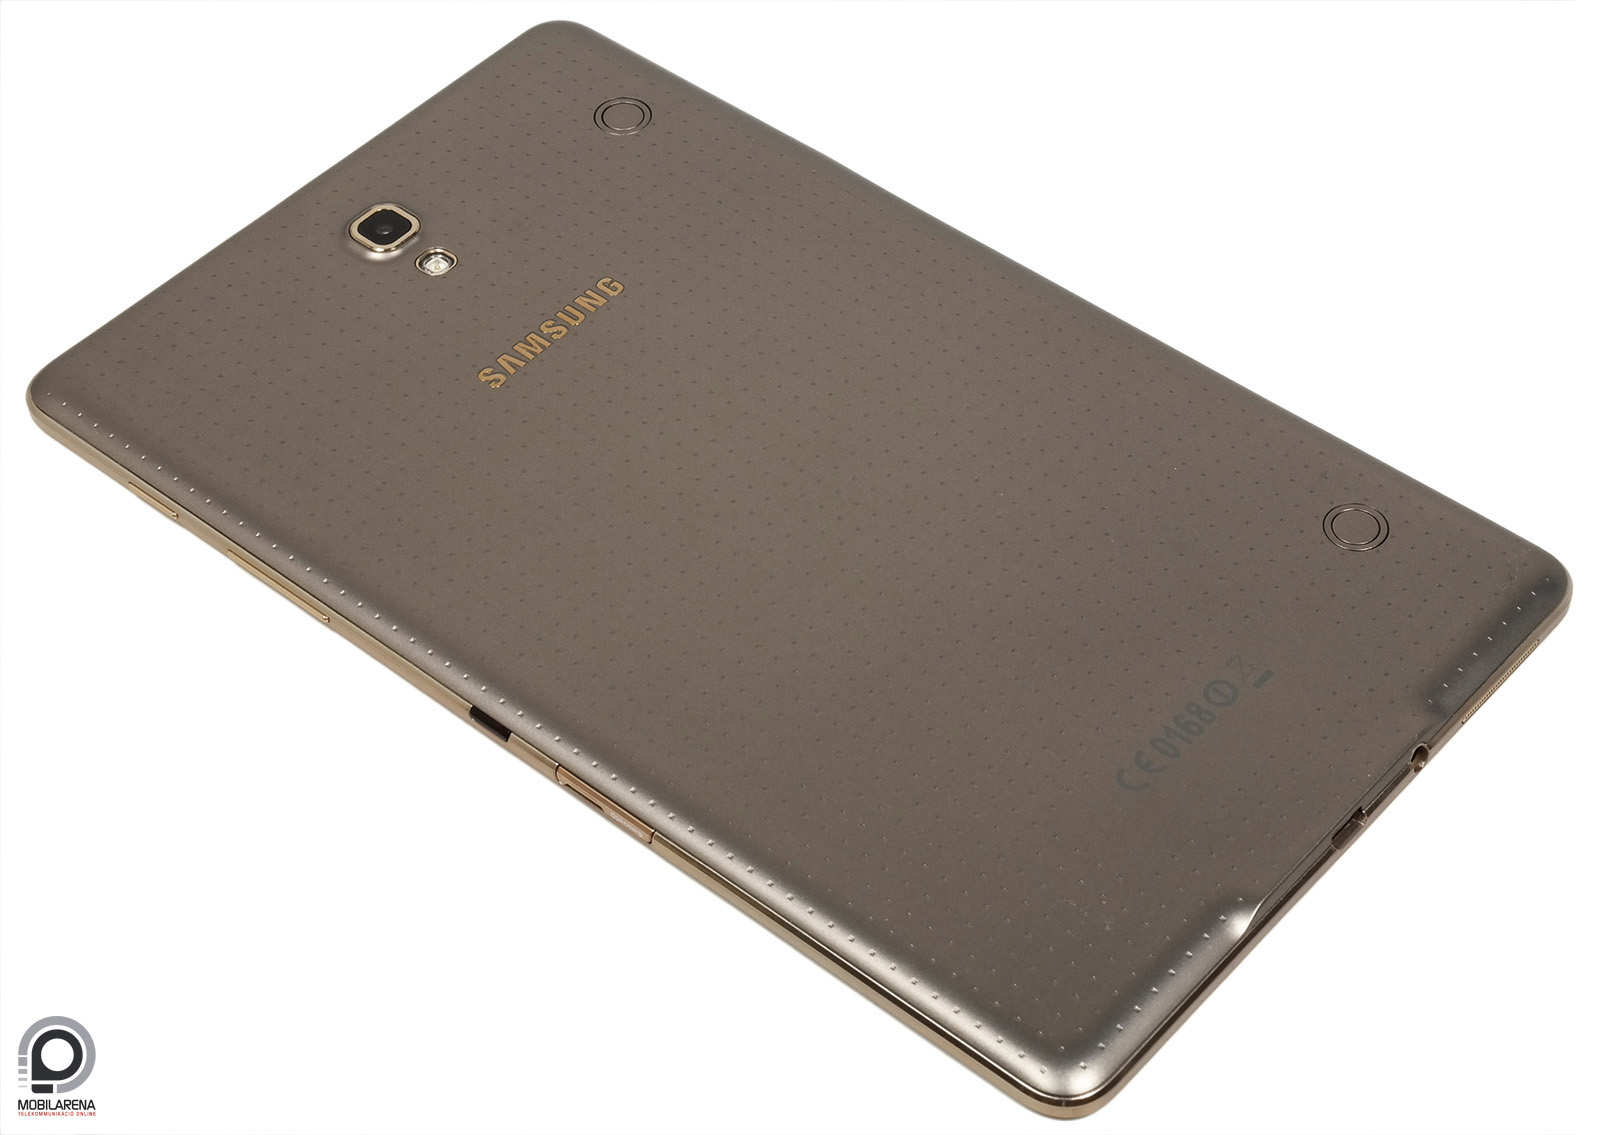 Samsung Galaxy Tab S 8.4 - színt visz az életedbe - Mobilarena Tablet teszt